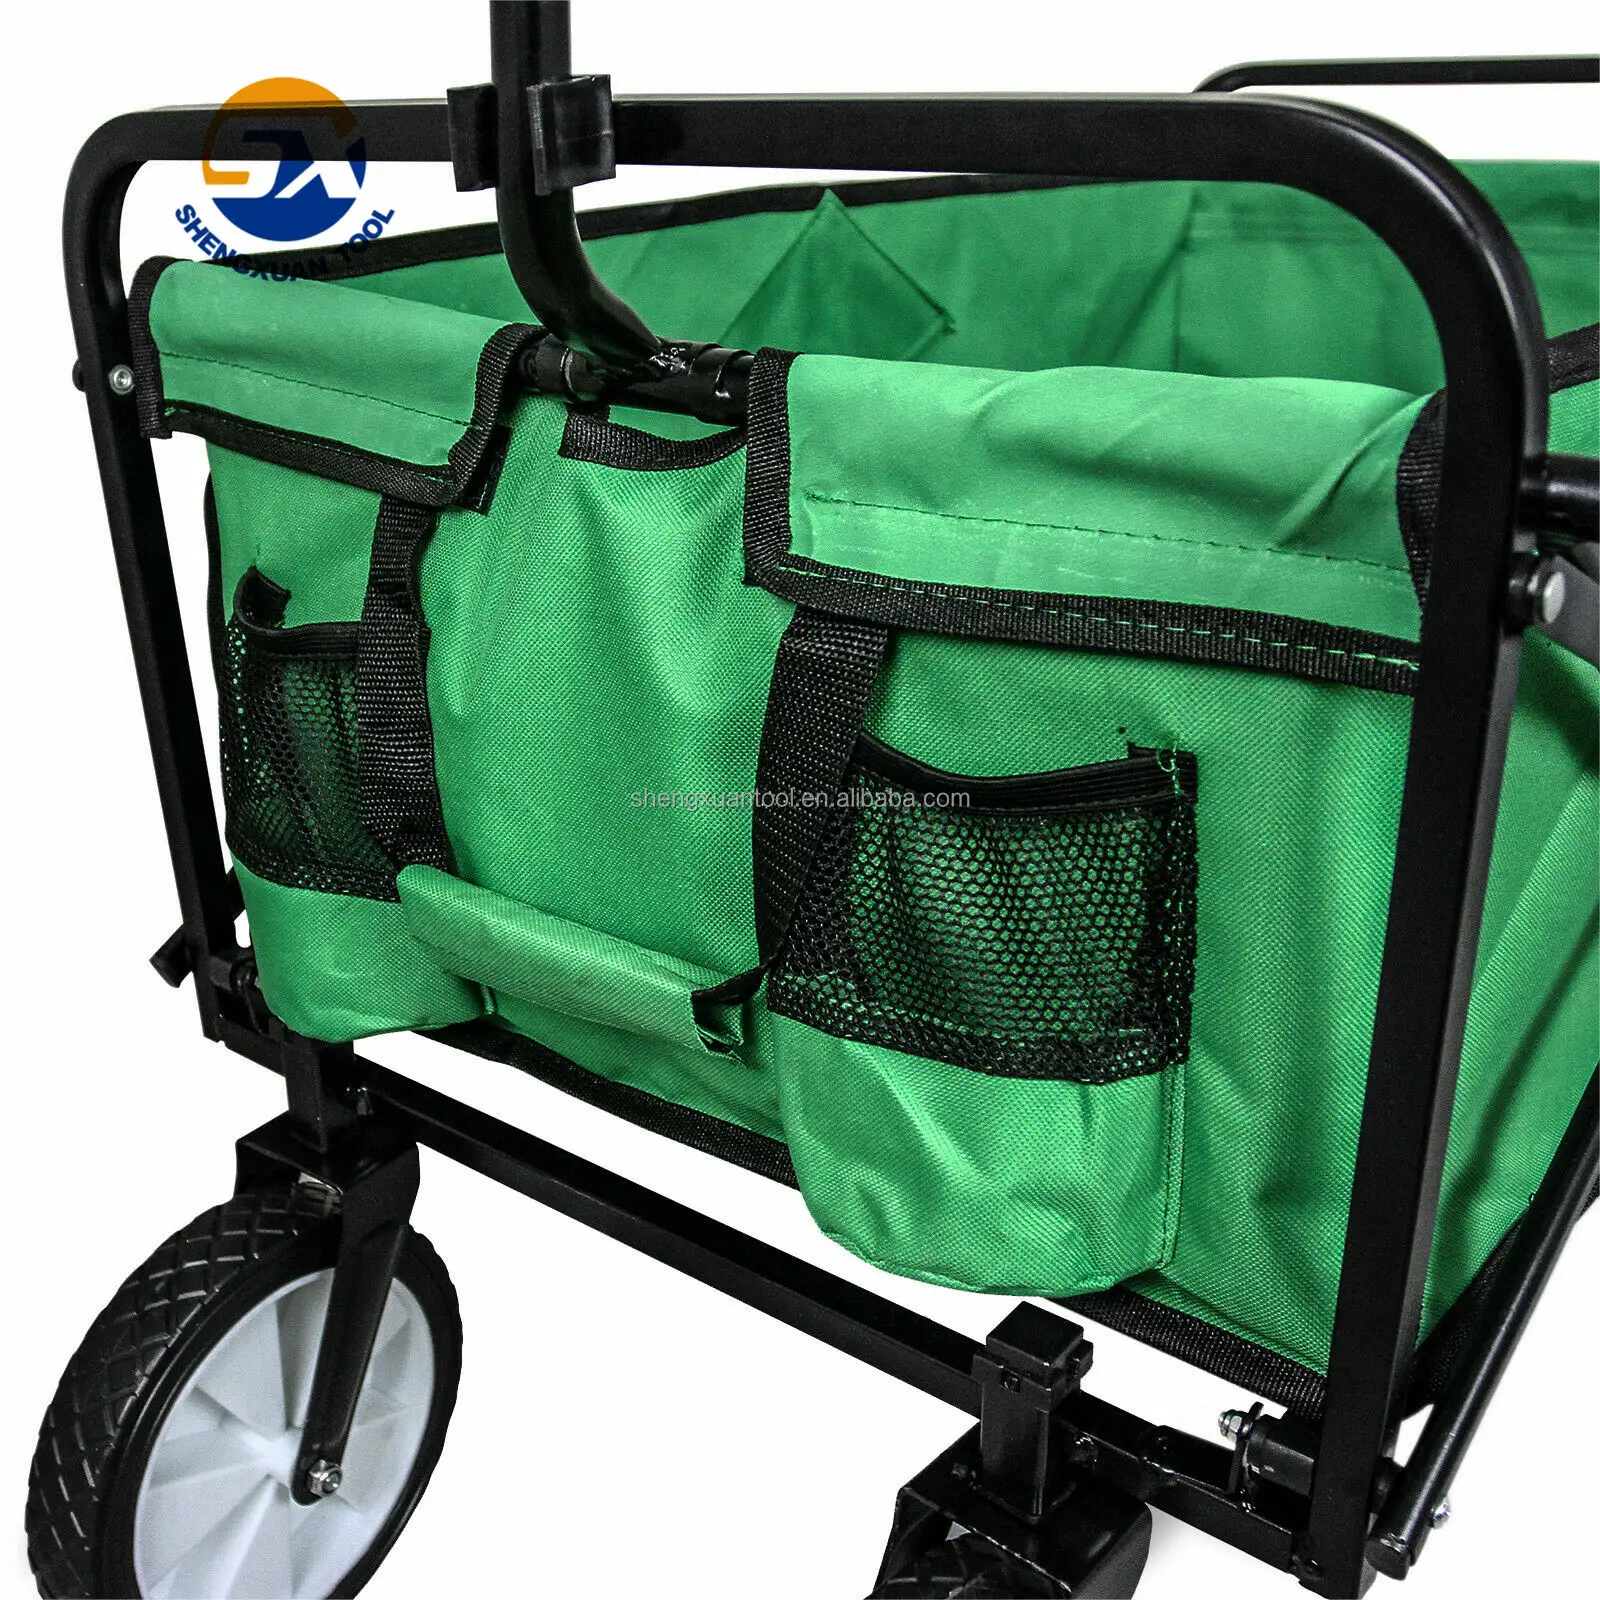 Carrito de playa utilitario para acampar al aire libre, carrito de playa, carro utilitario plegable con ruedas todoterreno